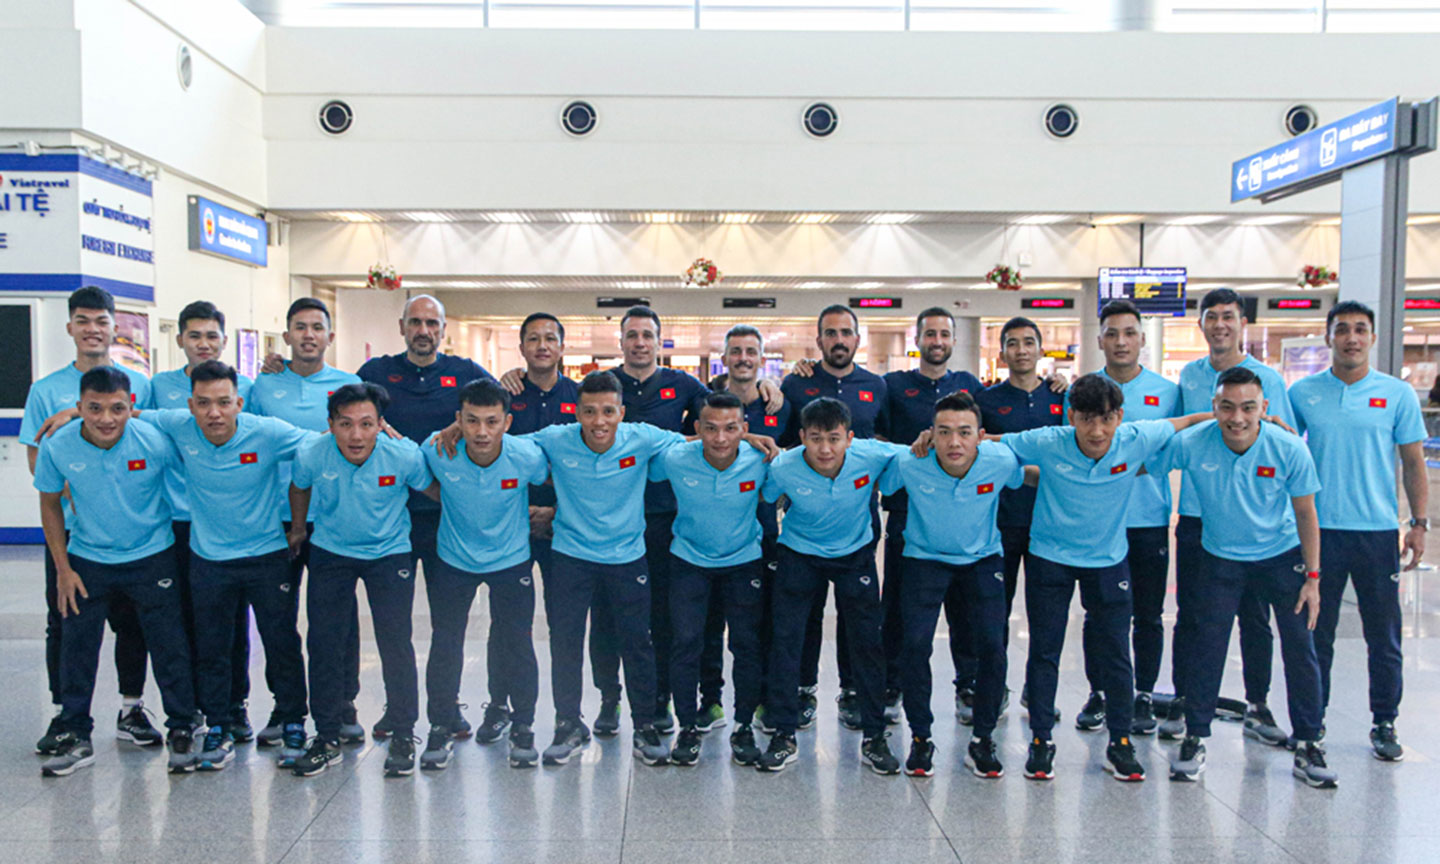 Tối nay (24/9), ĐT futsal Việt Nam sẽ lên đường sang Kuwait tham dự VCK futsal châu Á 2022